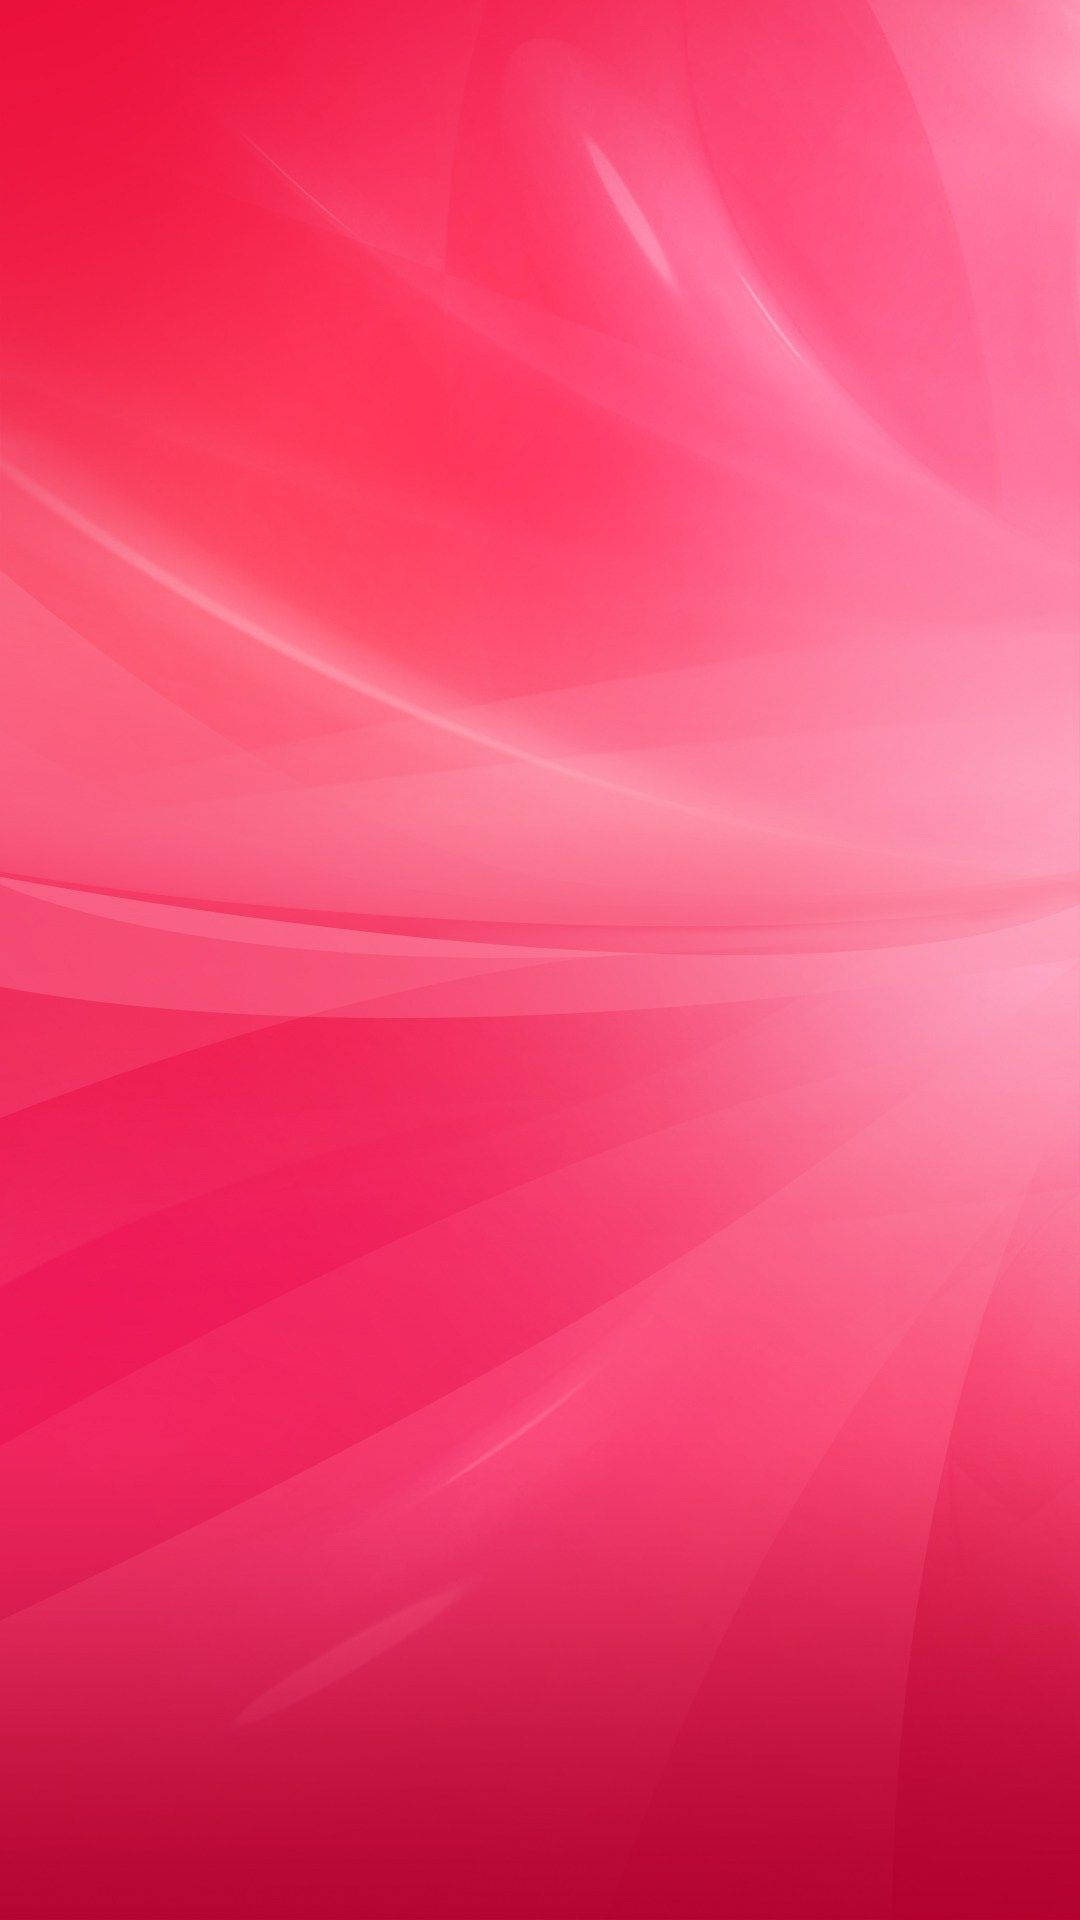 Mantentea La Moda Con Un Hermoso Iphone De Color Rosa Pastel. Fondo de pantalla